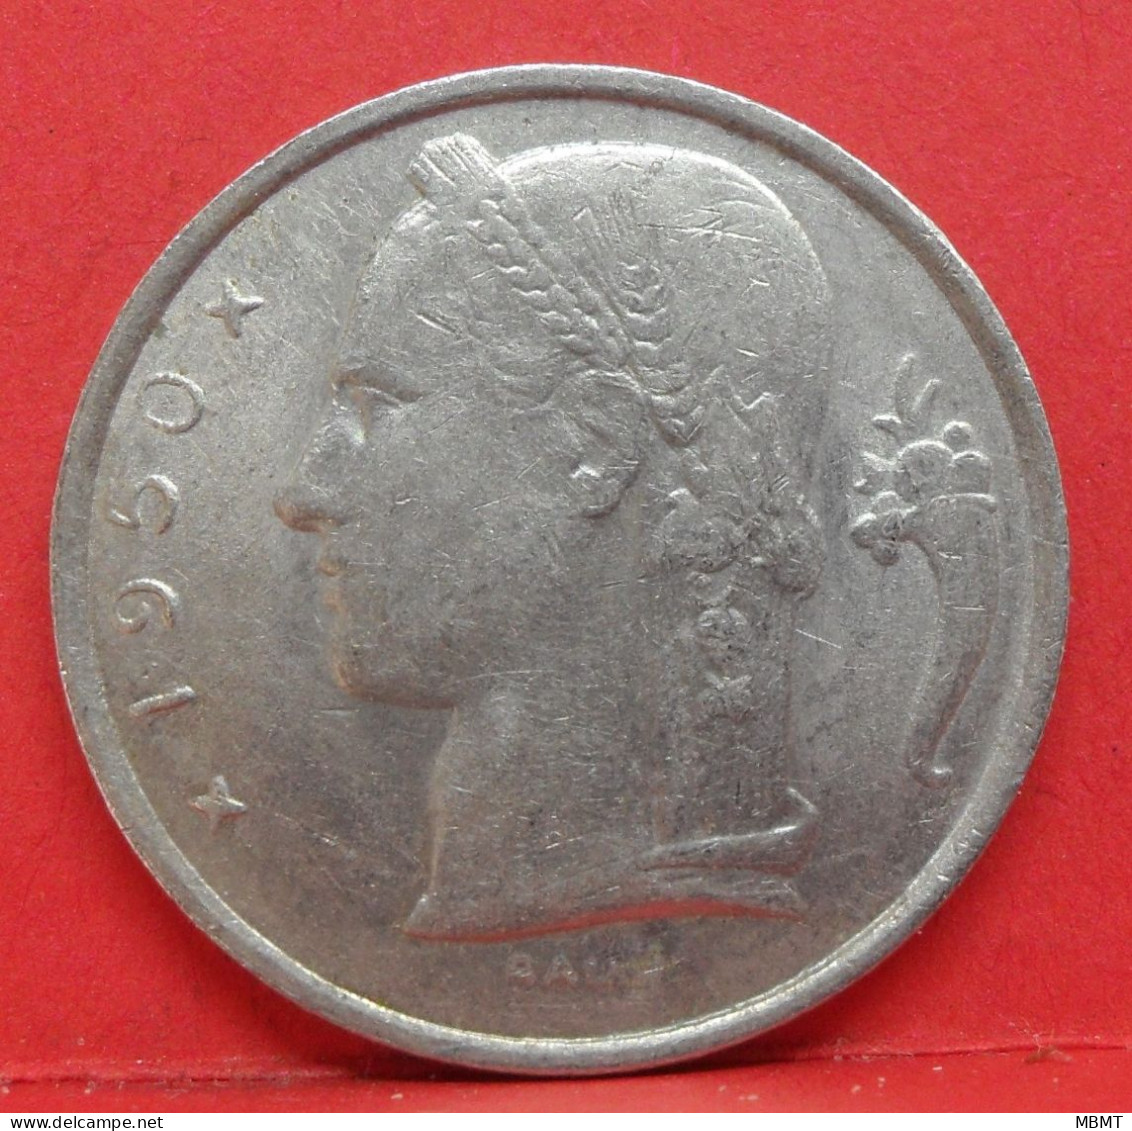 5 Francs 1950 - TTB - Pièce Monnaie Belgique - Article N°1804 - 5 Francs